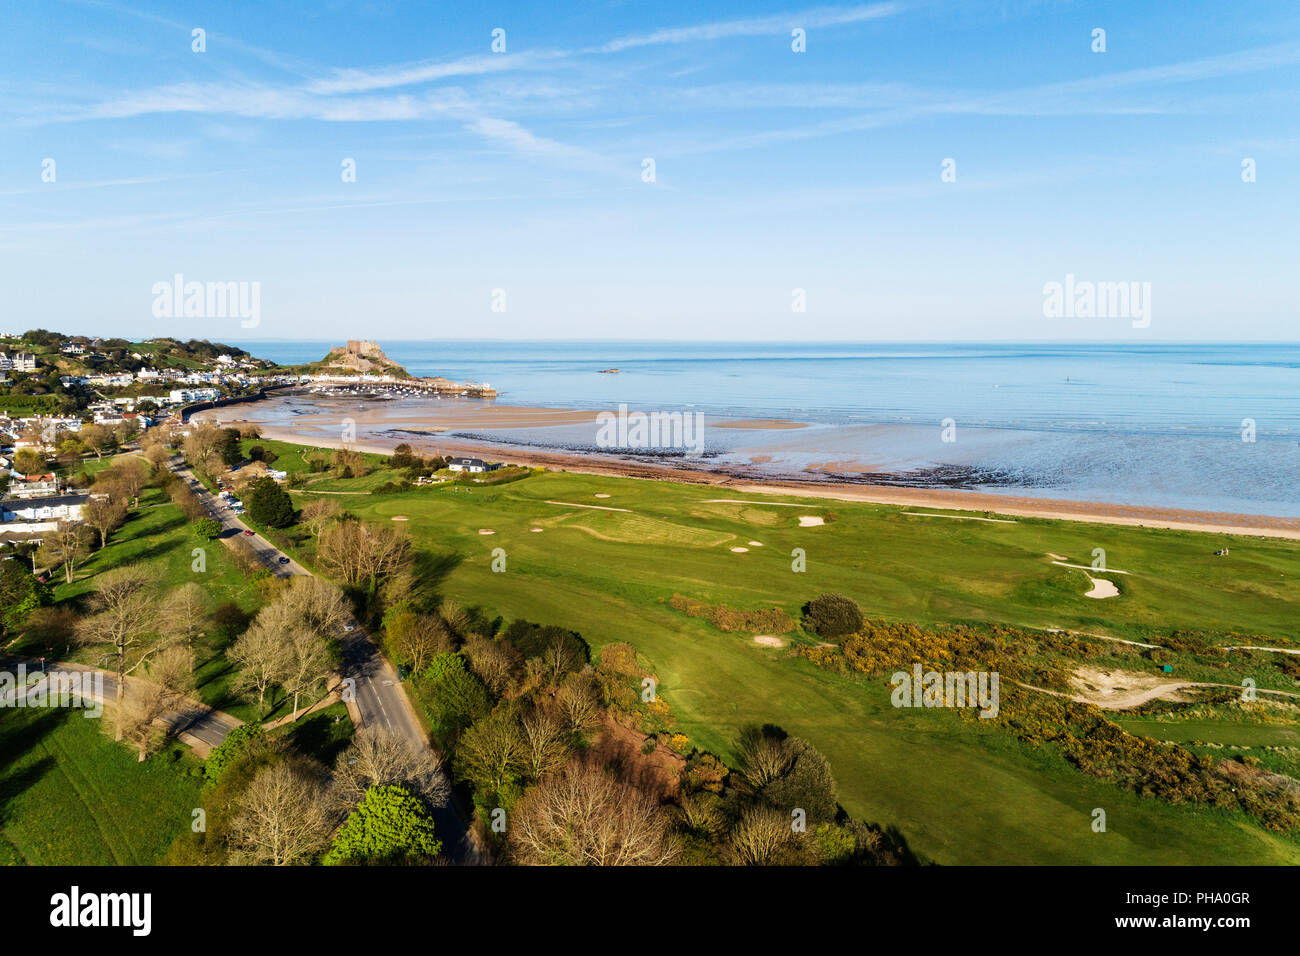 Vue aérienne de Golf Royal Jersey, château Mont Orgueil (Gorey Castle), Gorey, Jersey, Channel Islands, Royaume-Uni, Europe Banque D'Images